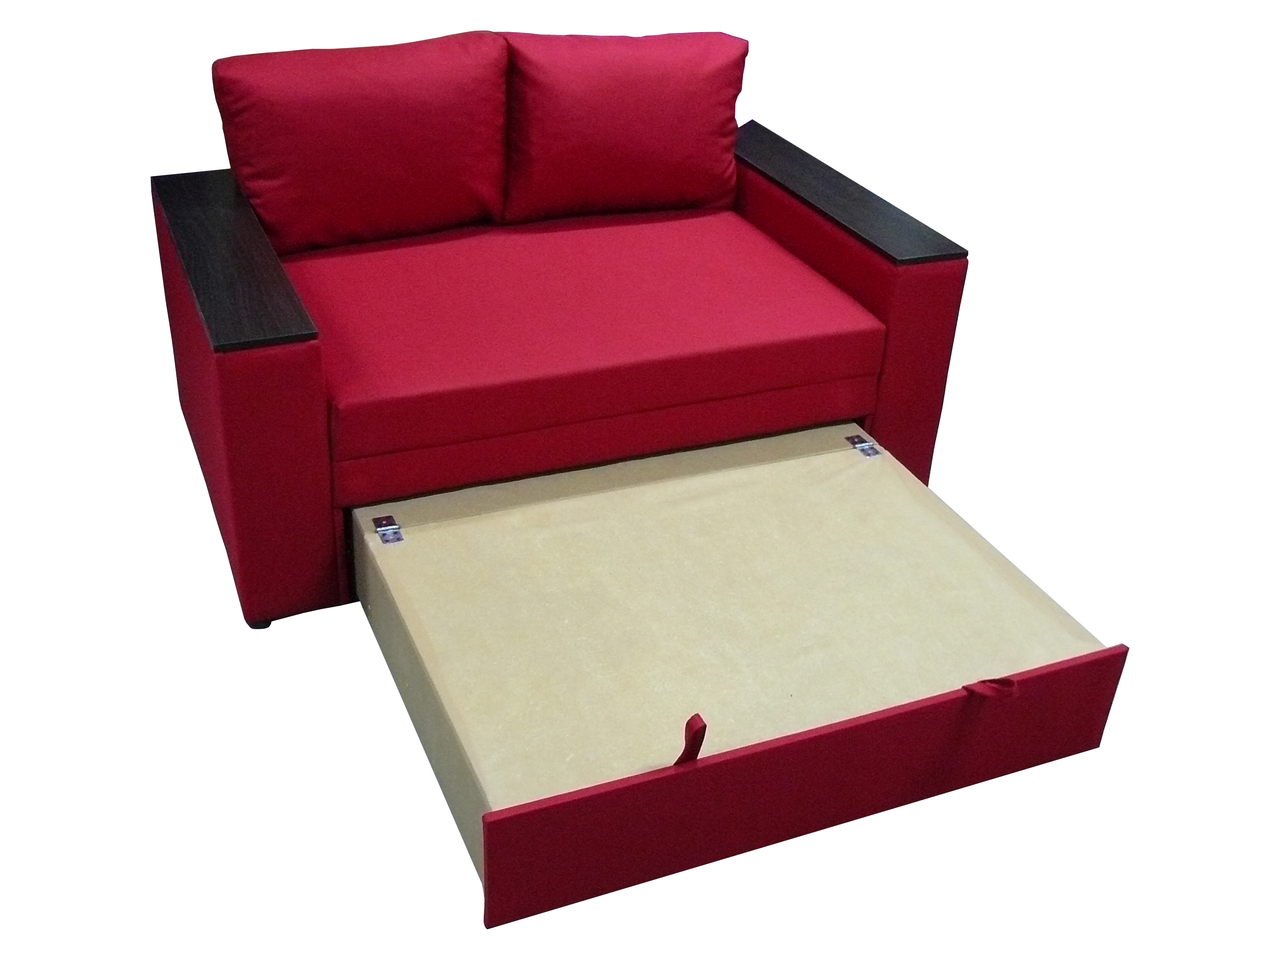 Диван-крісло Кубус 160 (червоний, 200х97 см) IMI dkbs160-sn-27 фото